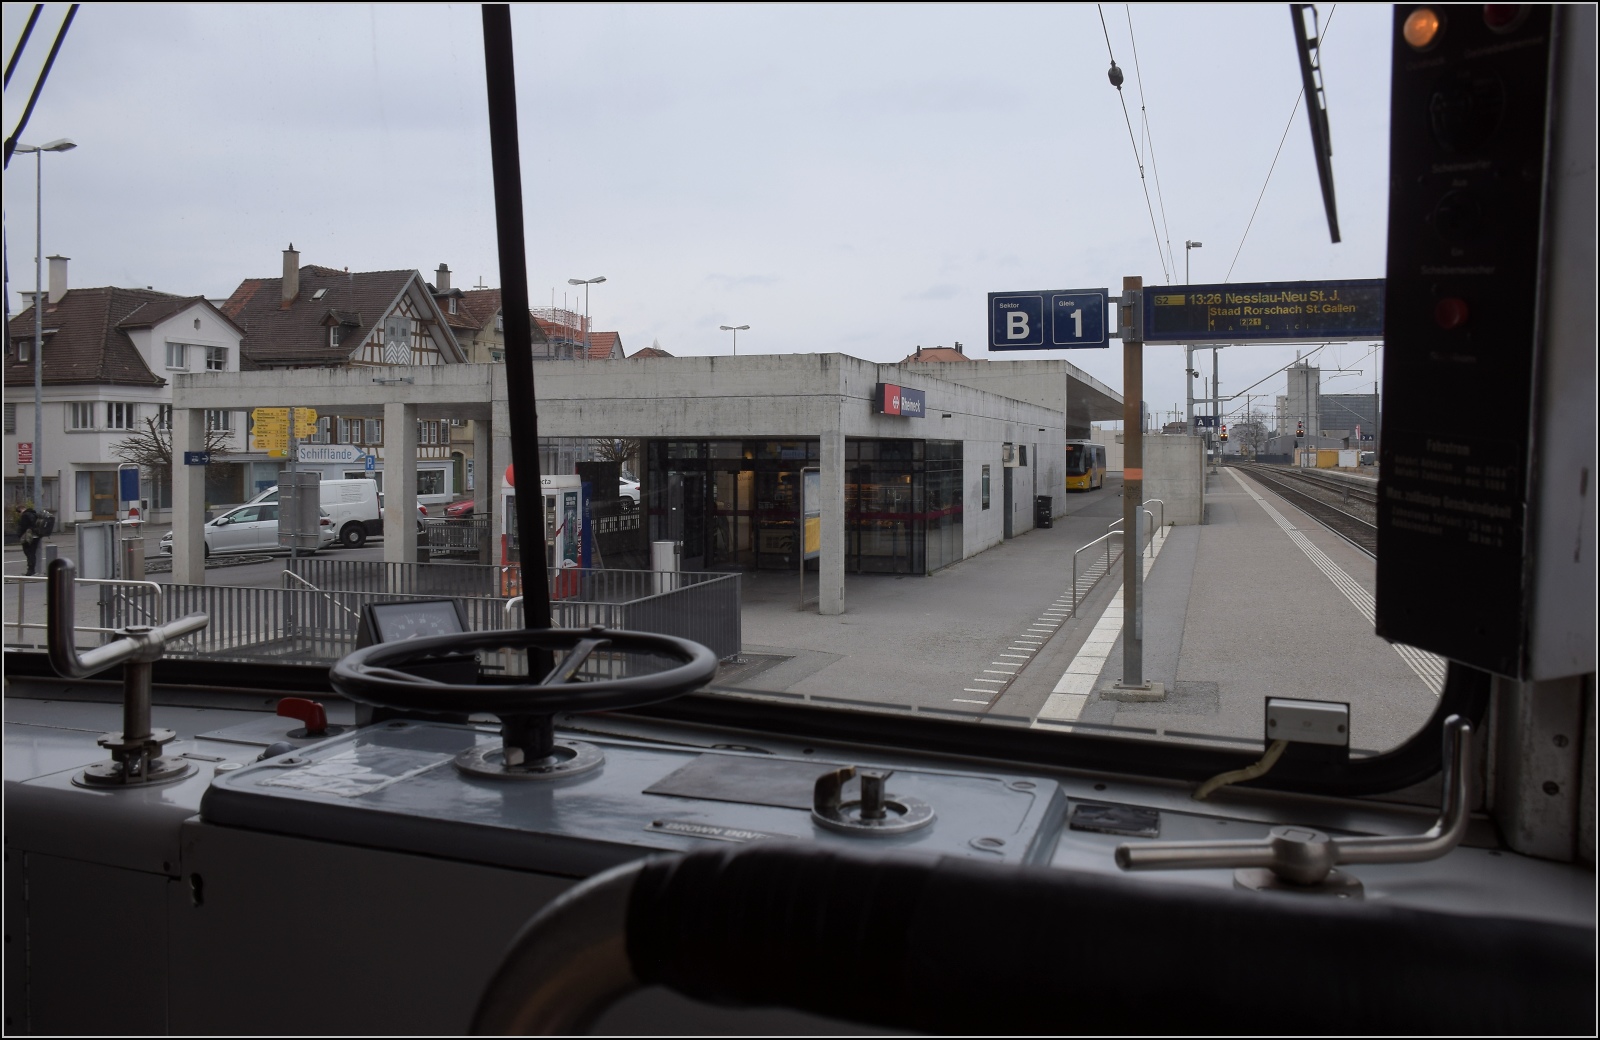 S26-BB-und-IGS-Minitreffen.

Blick aus BDeh 1/2 1 'Liseli' auf den modernen Bahnhofsteil von Rheineck. Mich beschleicht das Gefühl, der wird in einigen Jahren völlig runtergekommen aussehen. Für uns geht es allerdings jetzt nach oben ins Appenzell. Februar 2023.